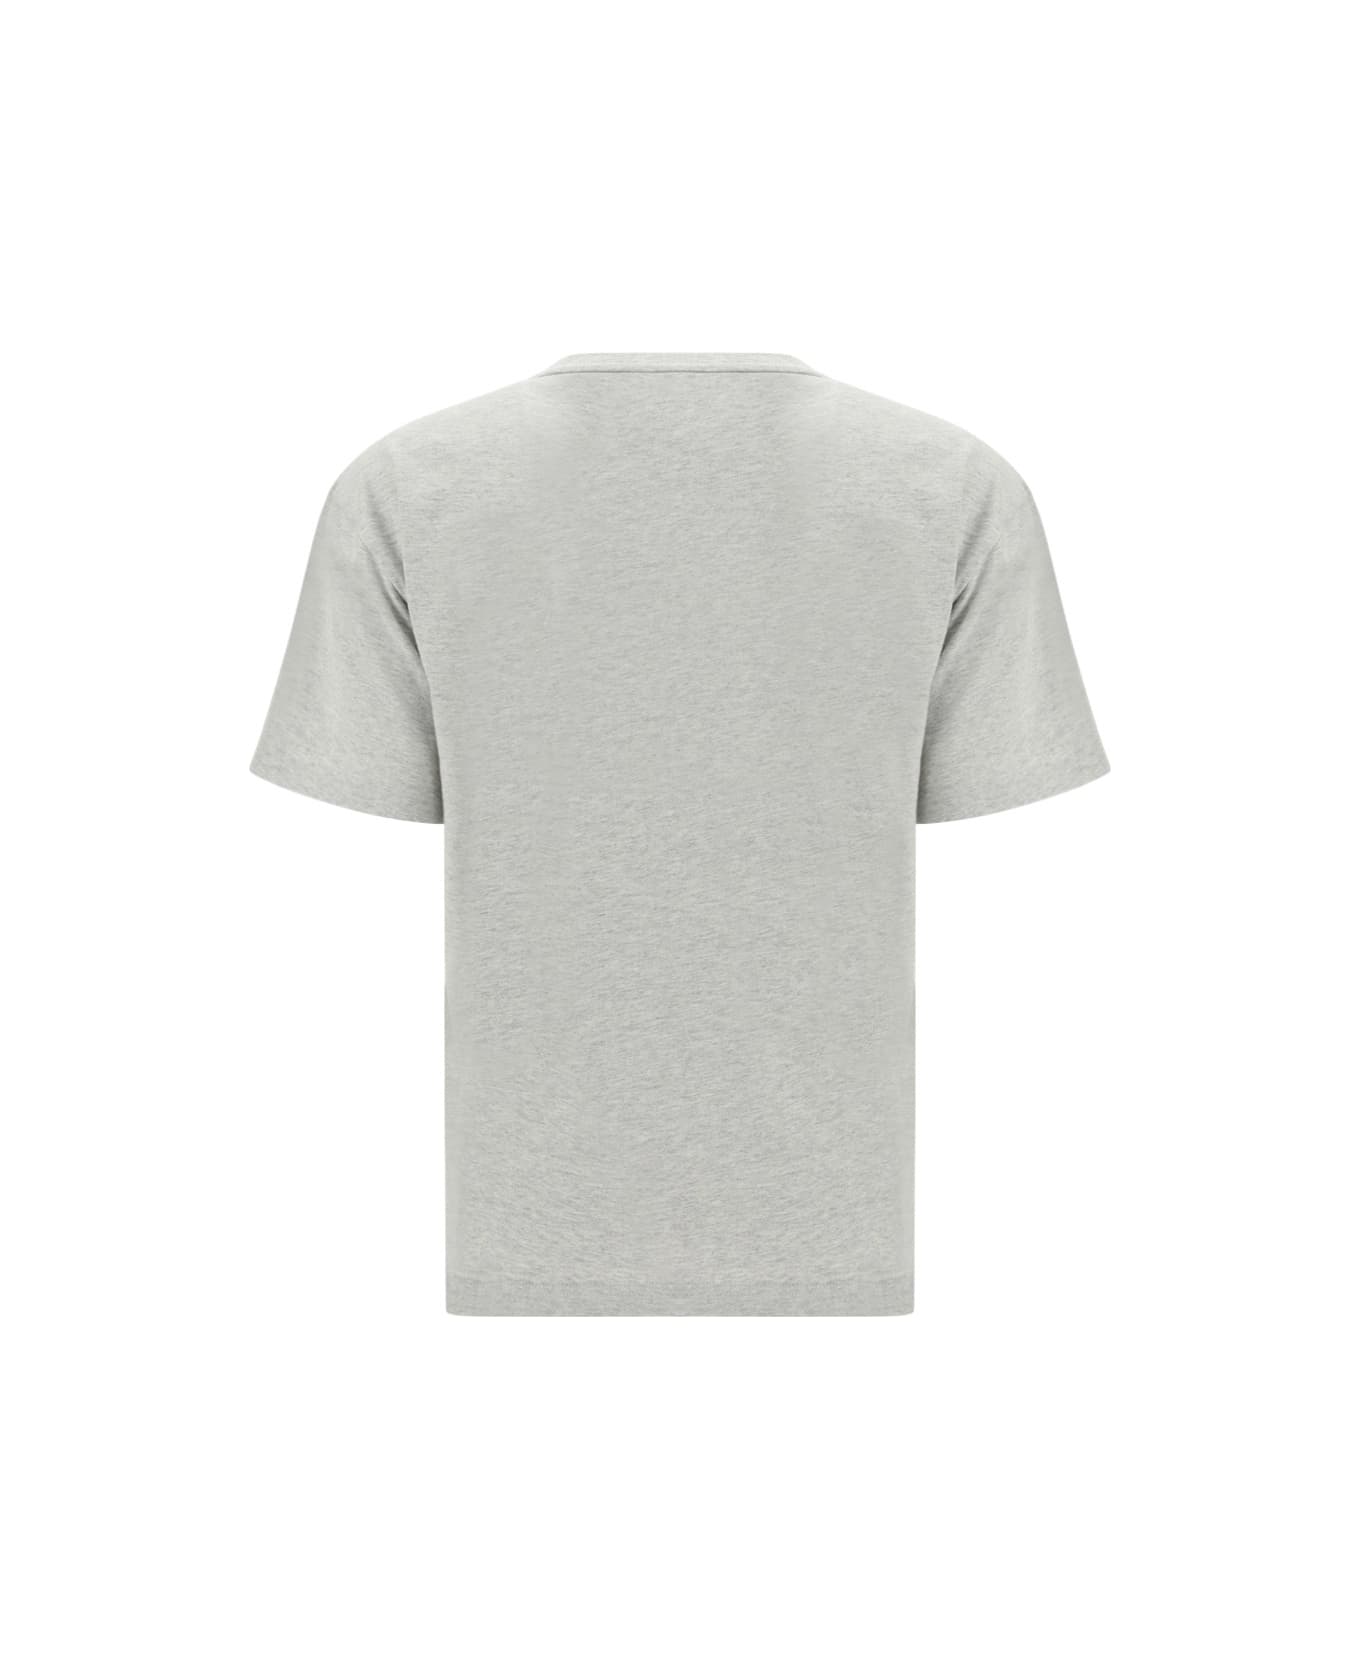 Alexander Wang Essential T-shirt - Light Heather Grey